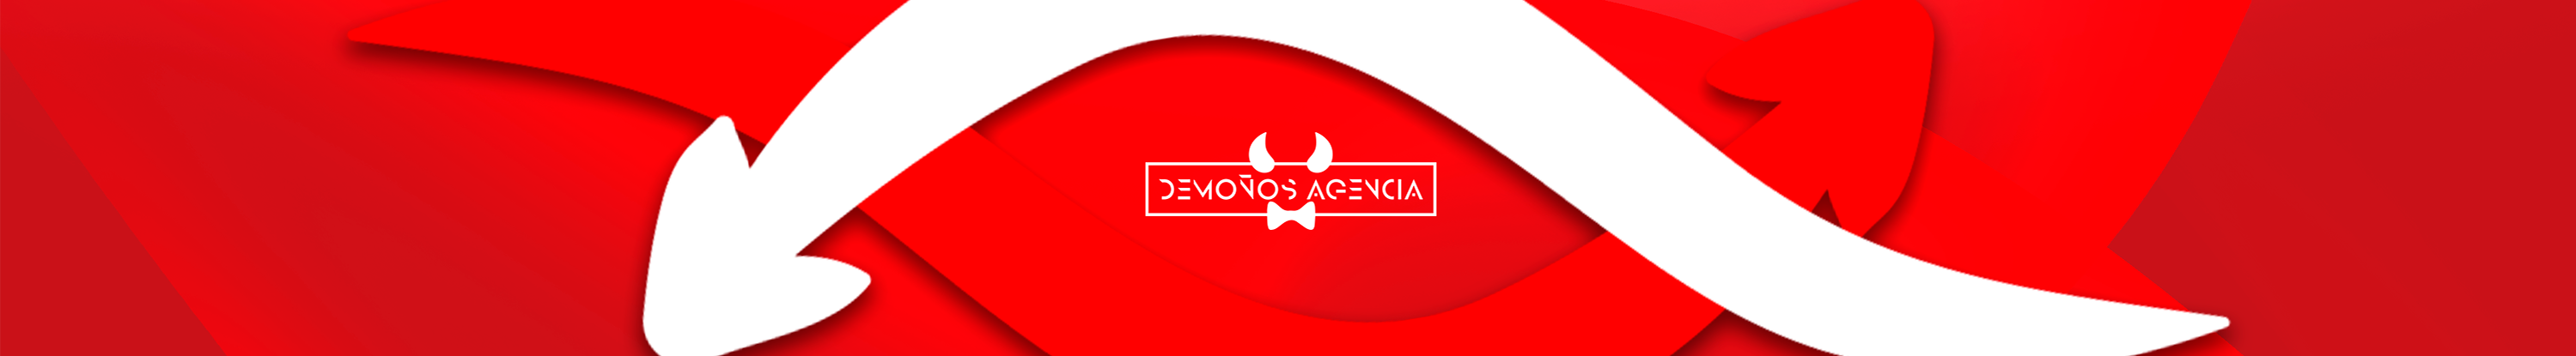 Demoños Agencia's profile banner